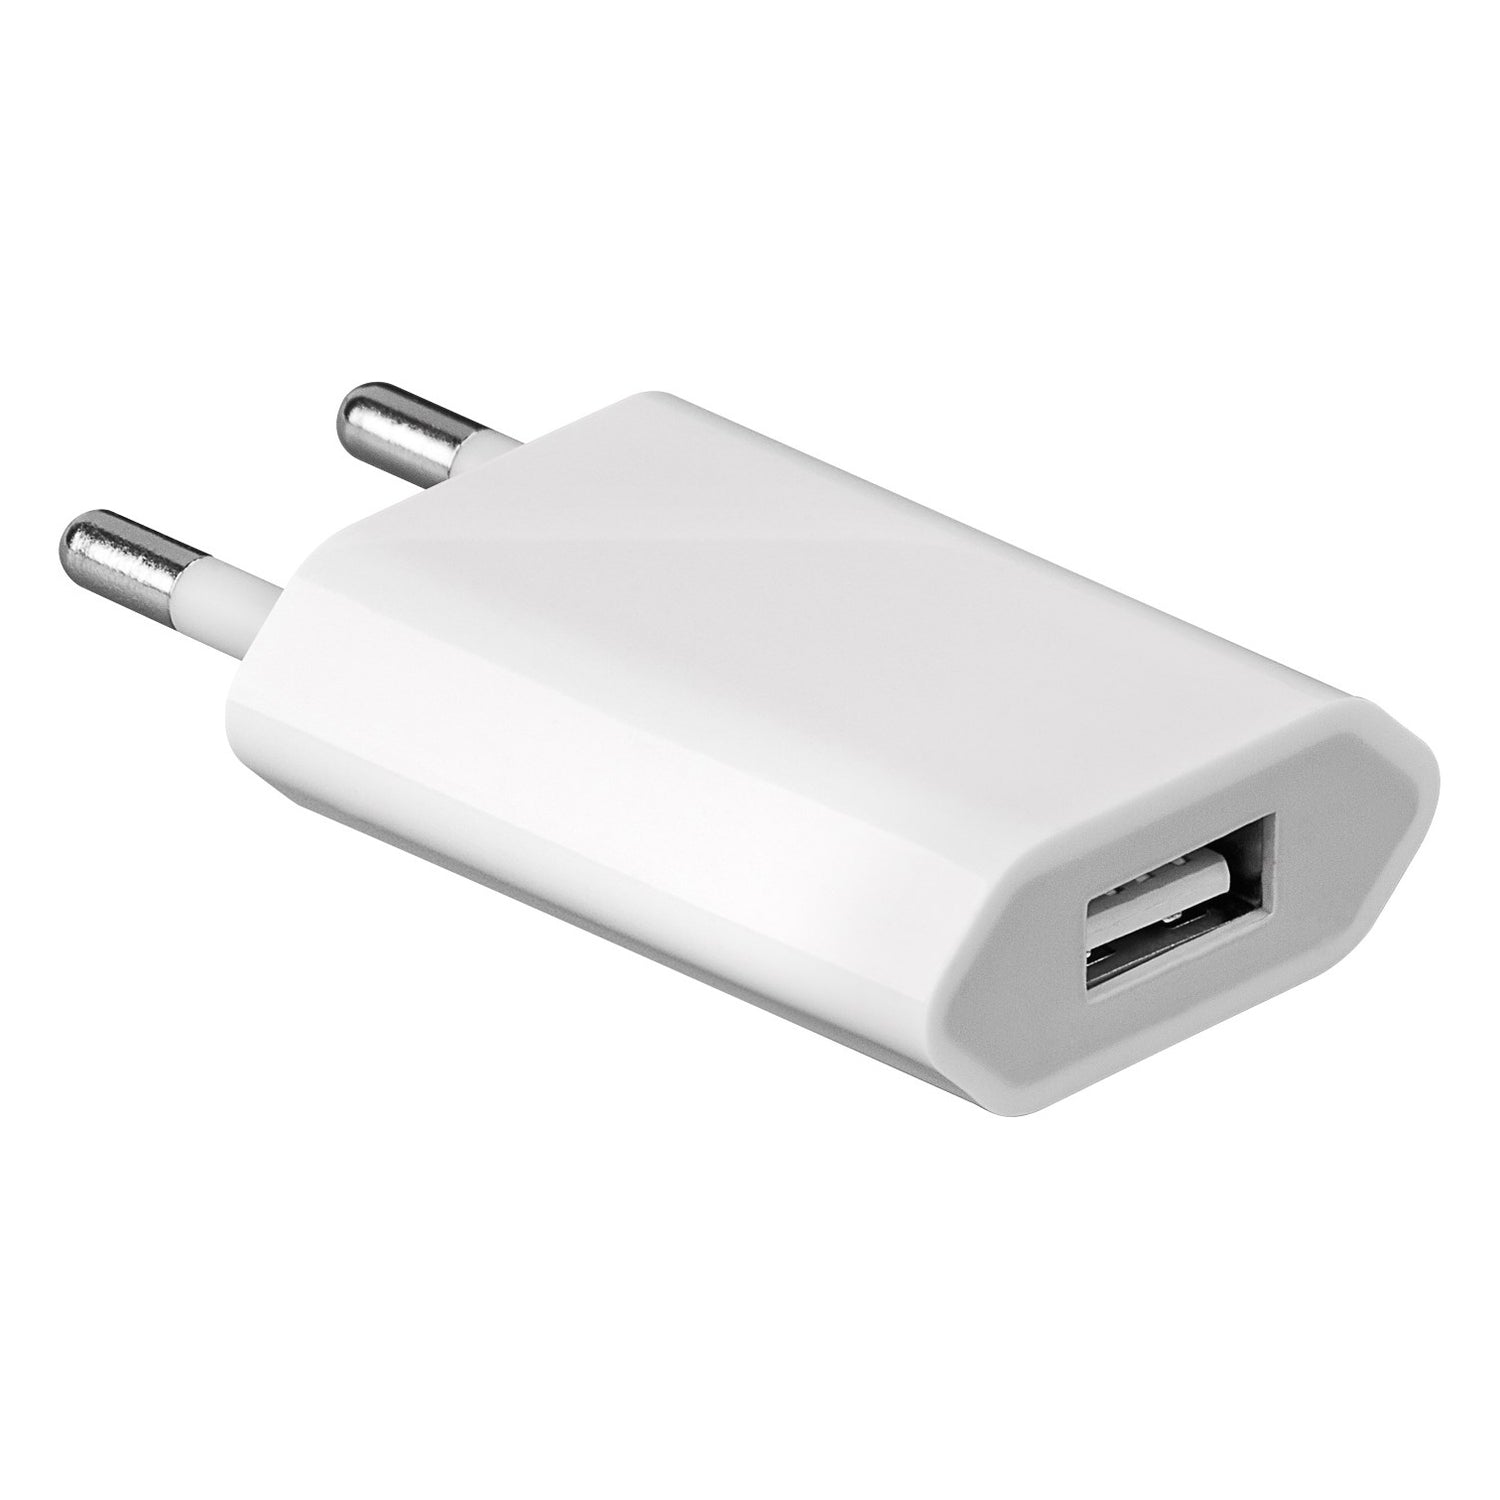 USB-Ladegerät für iPhone, Apple Watch und Smartphone 1,0A